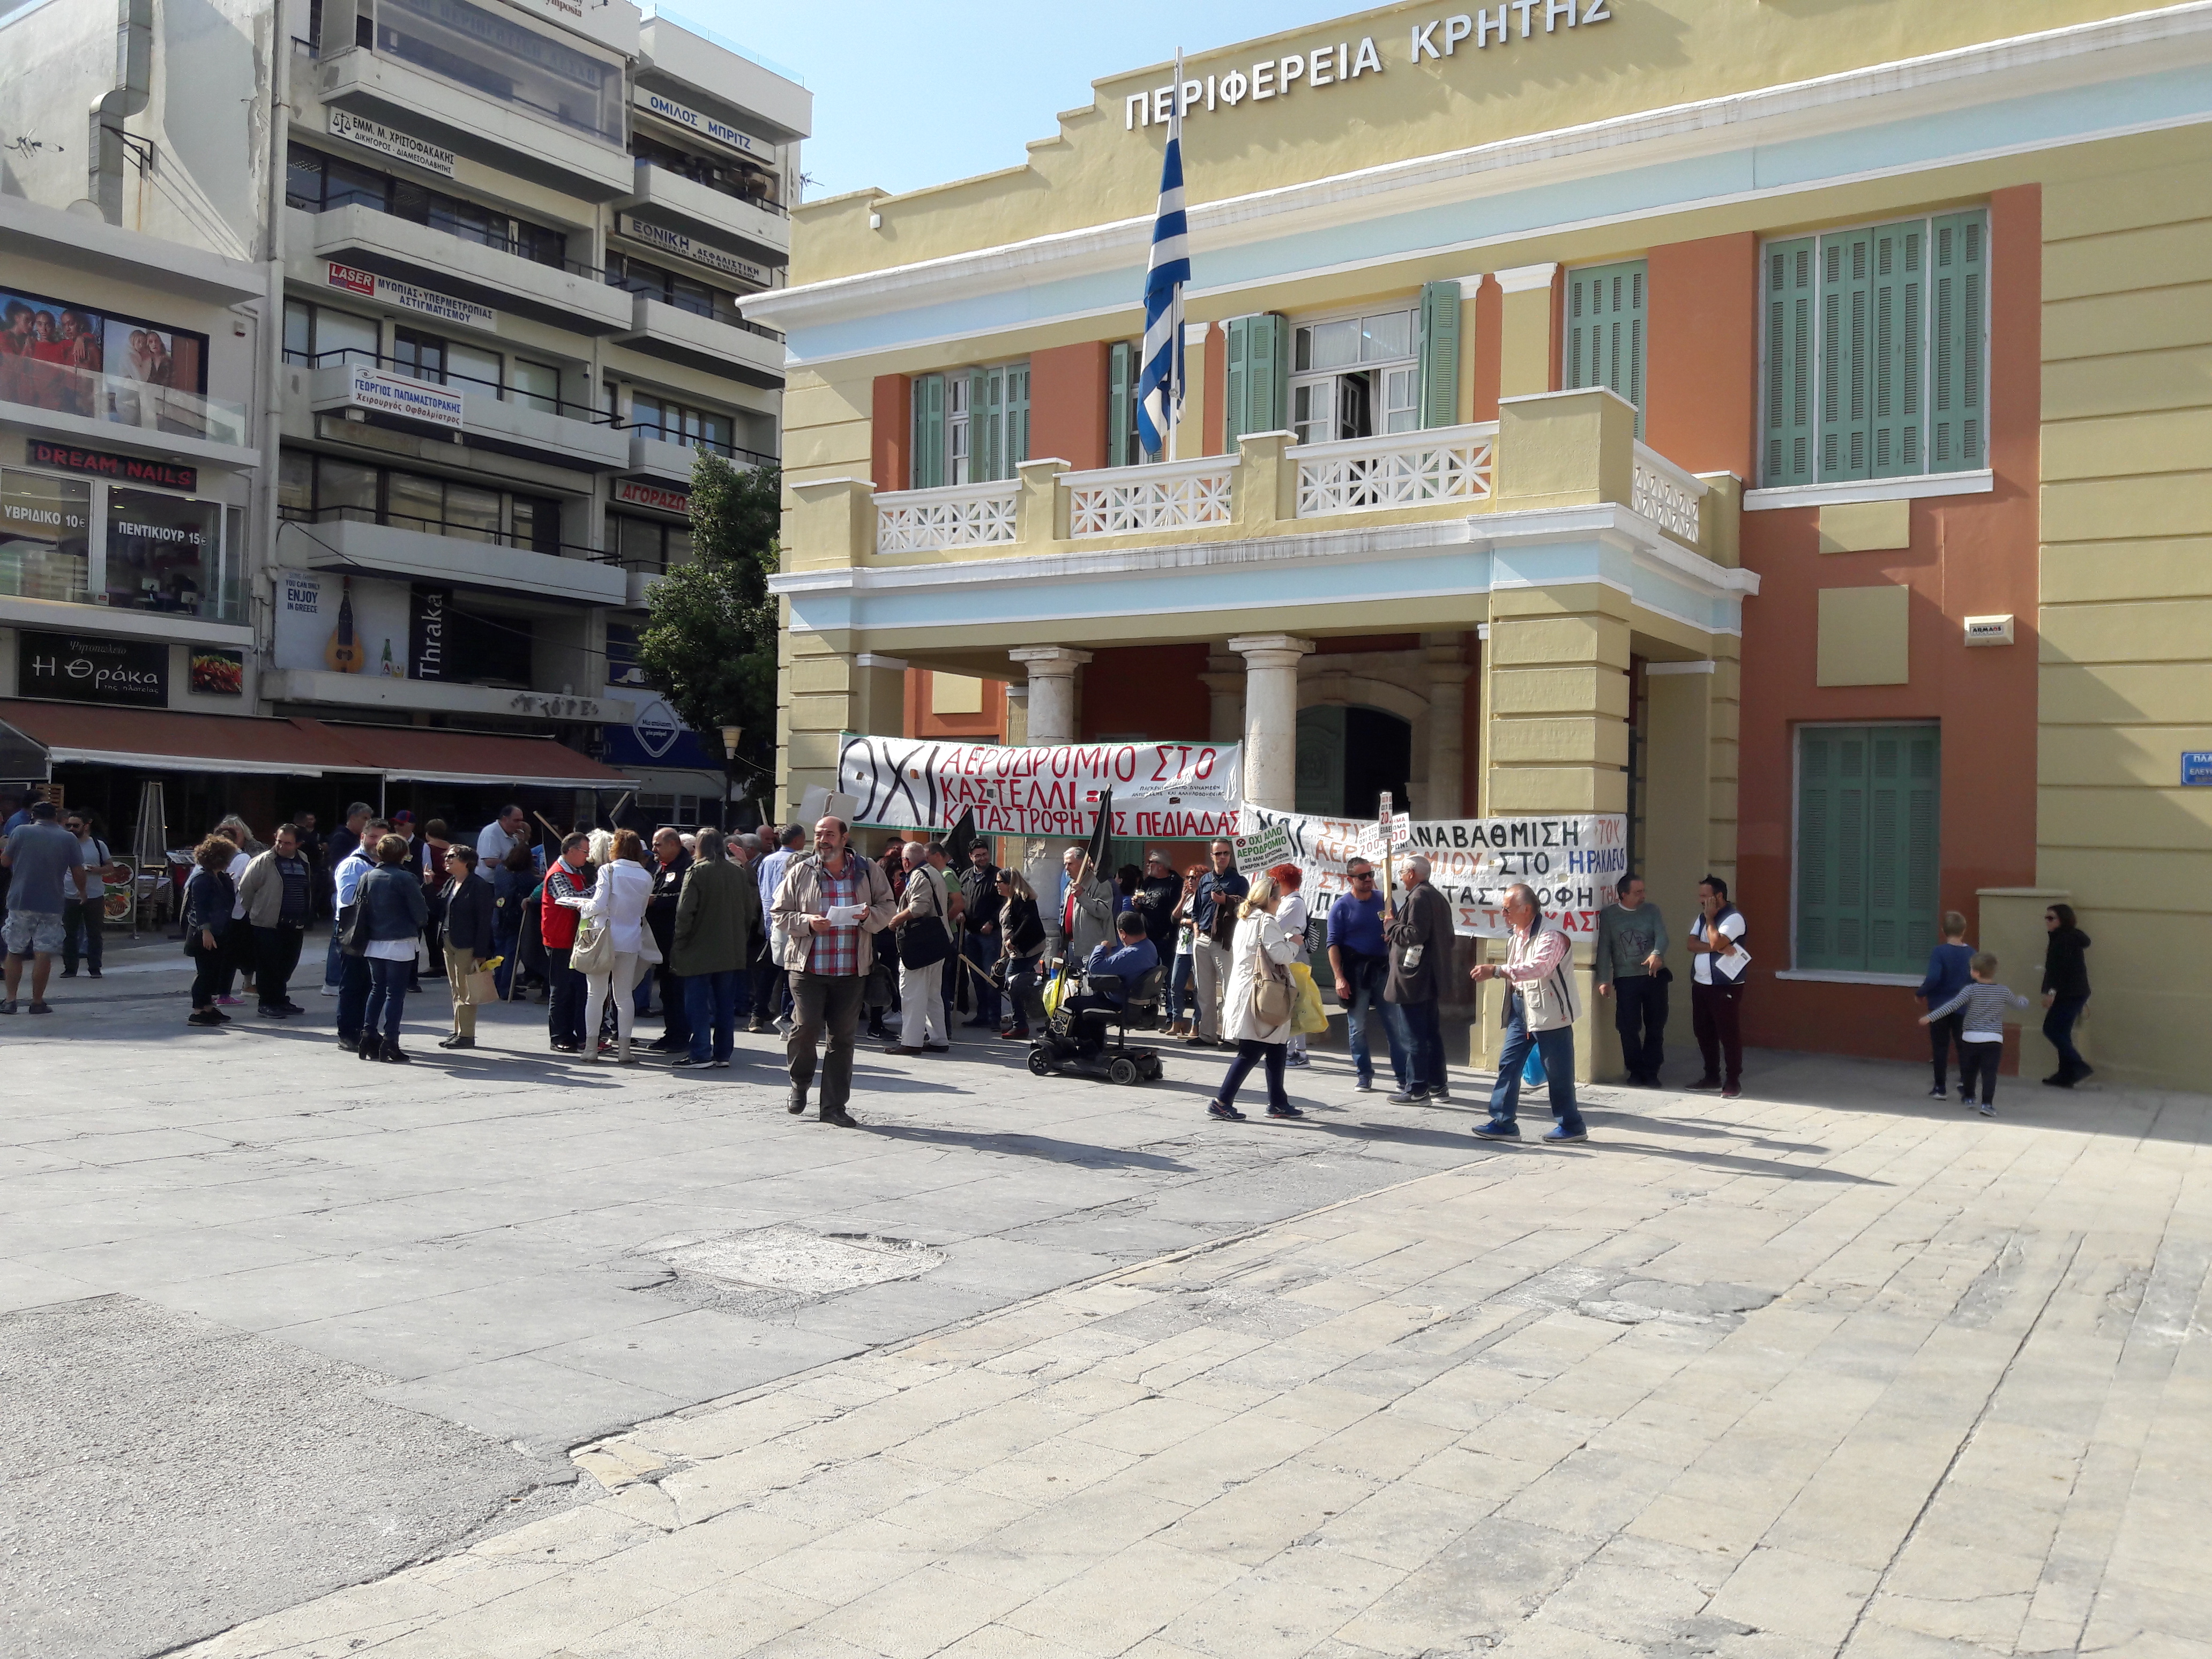 “Αστοχίες και ελλείψεις για την πρόσβαση των ΑμΕΑ” στο κτίριο της Περιφέρειας Κρήτης